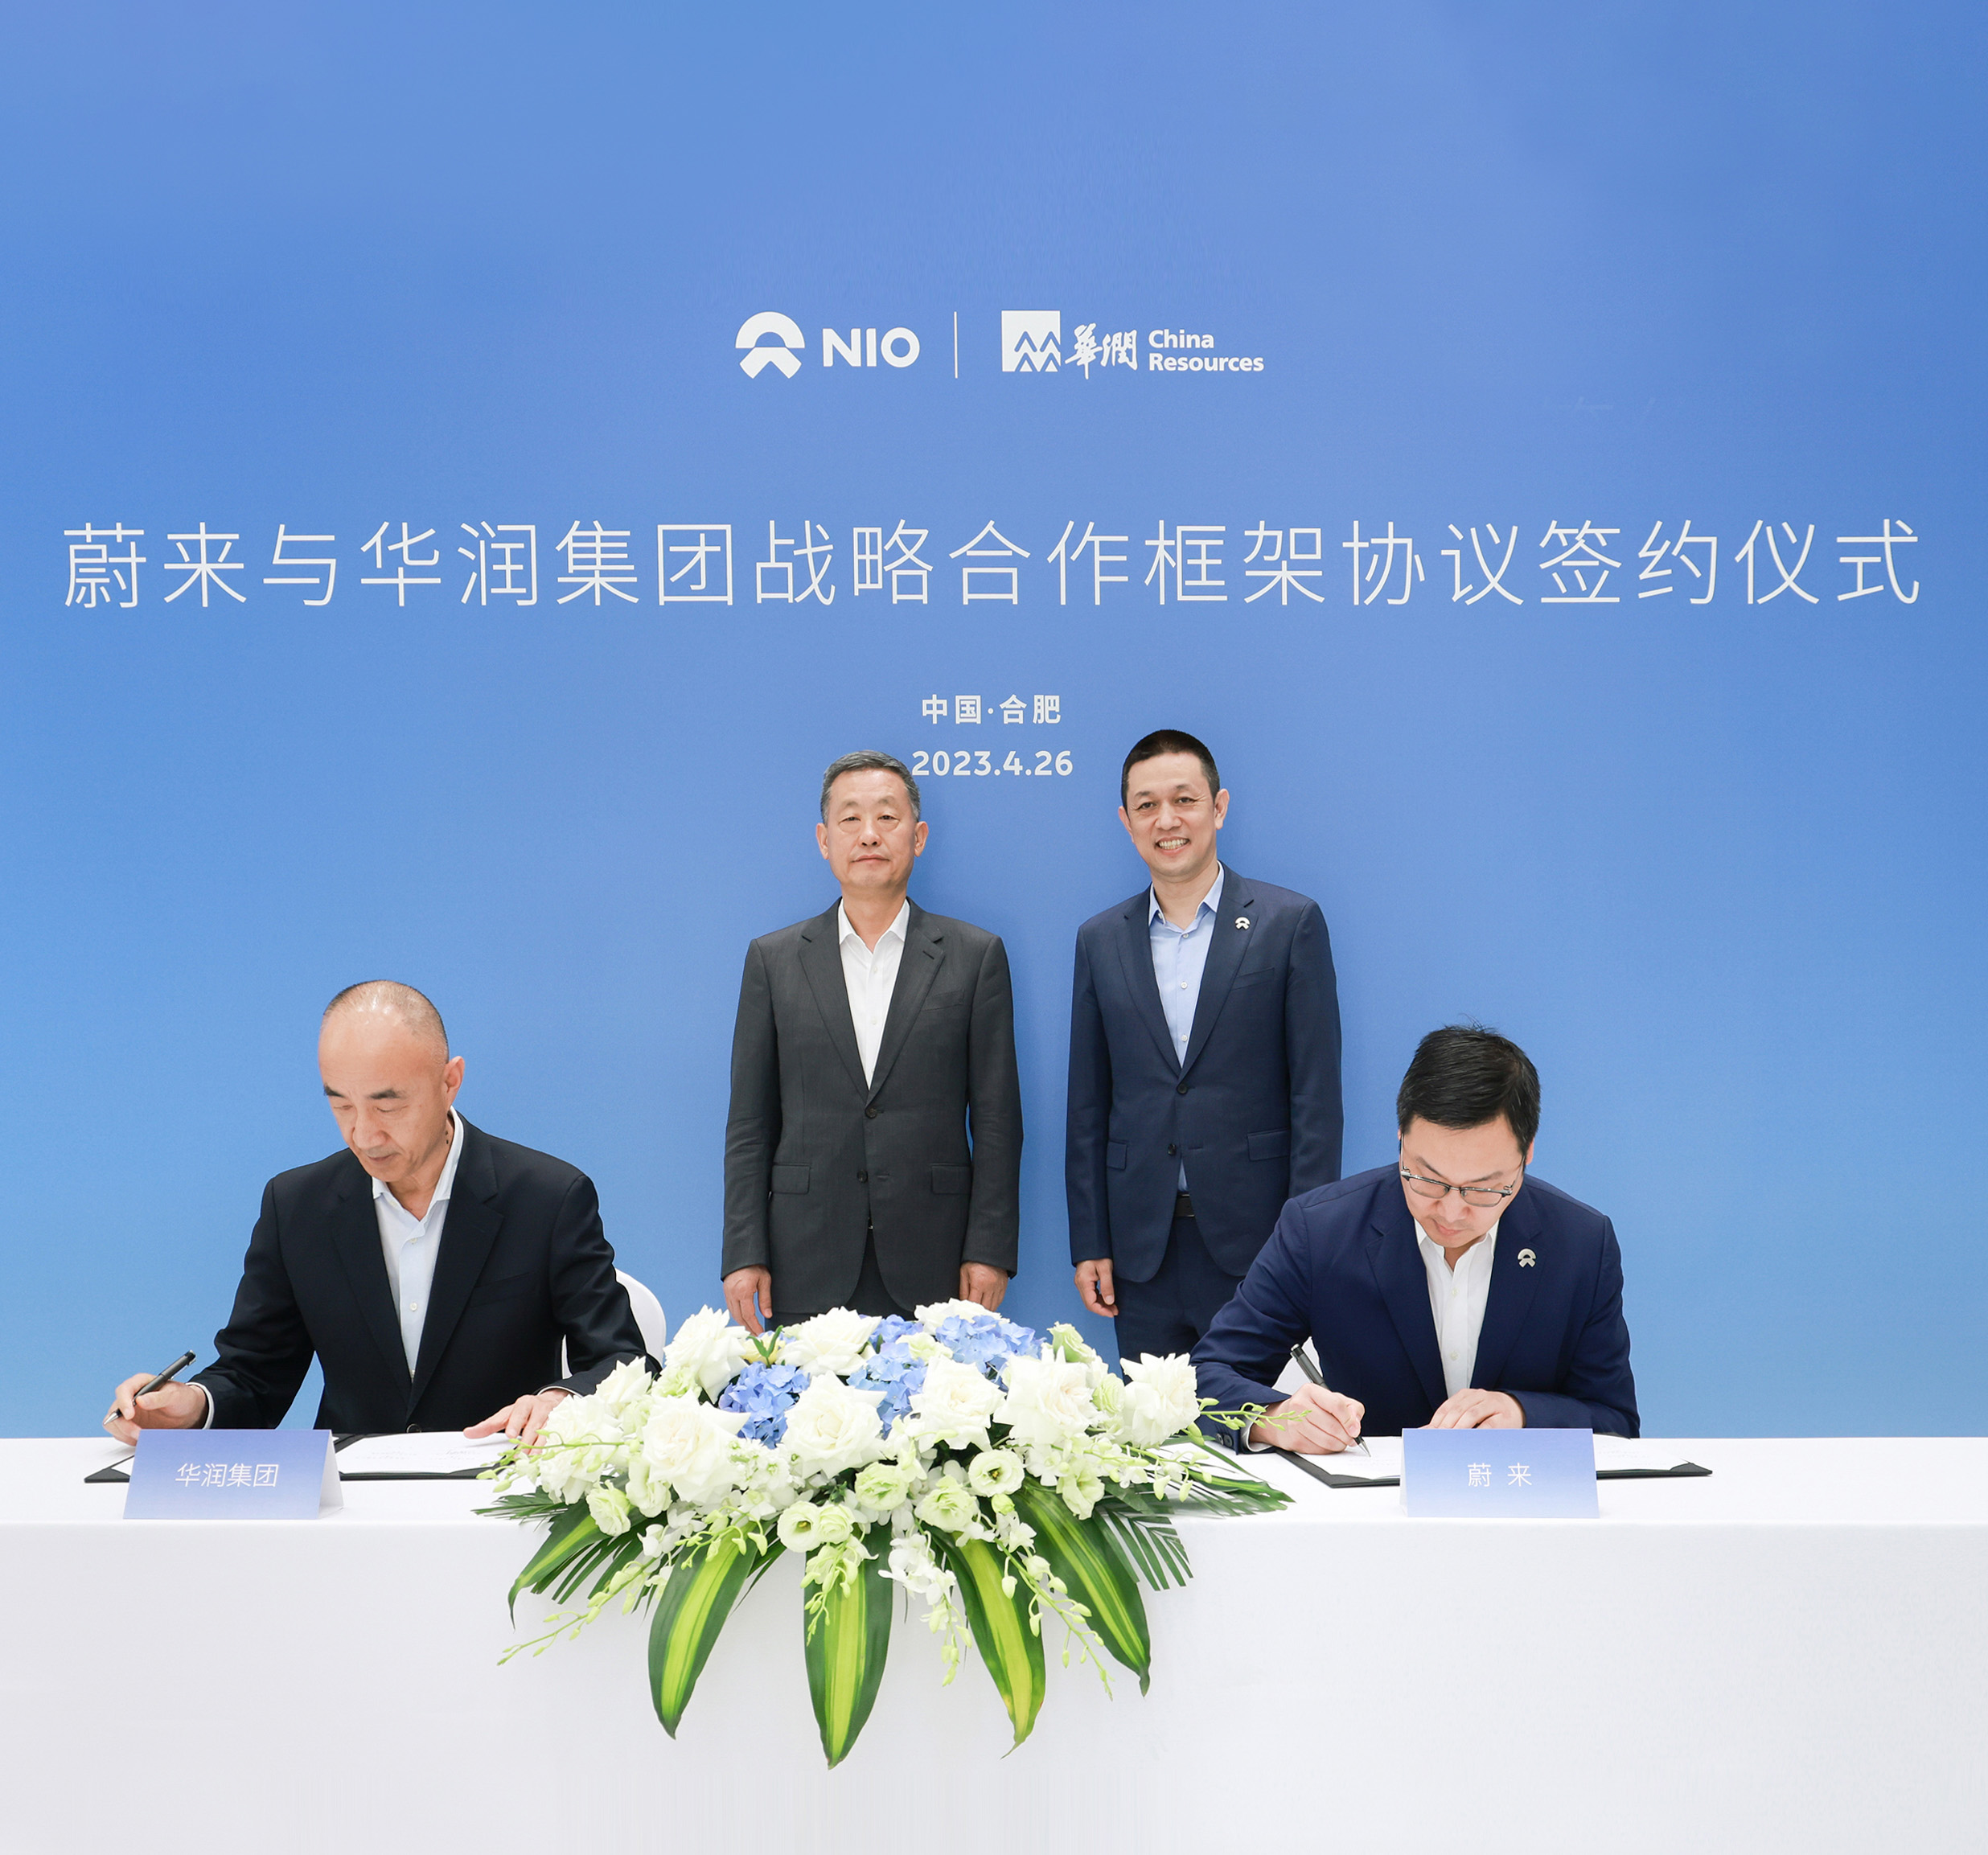 蔚来与华润集团签署战略合作框架协议 推动多产业合作